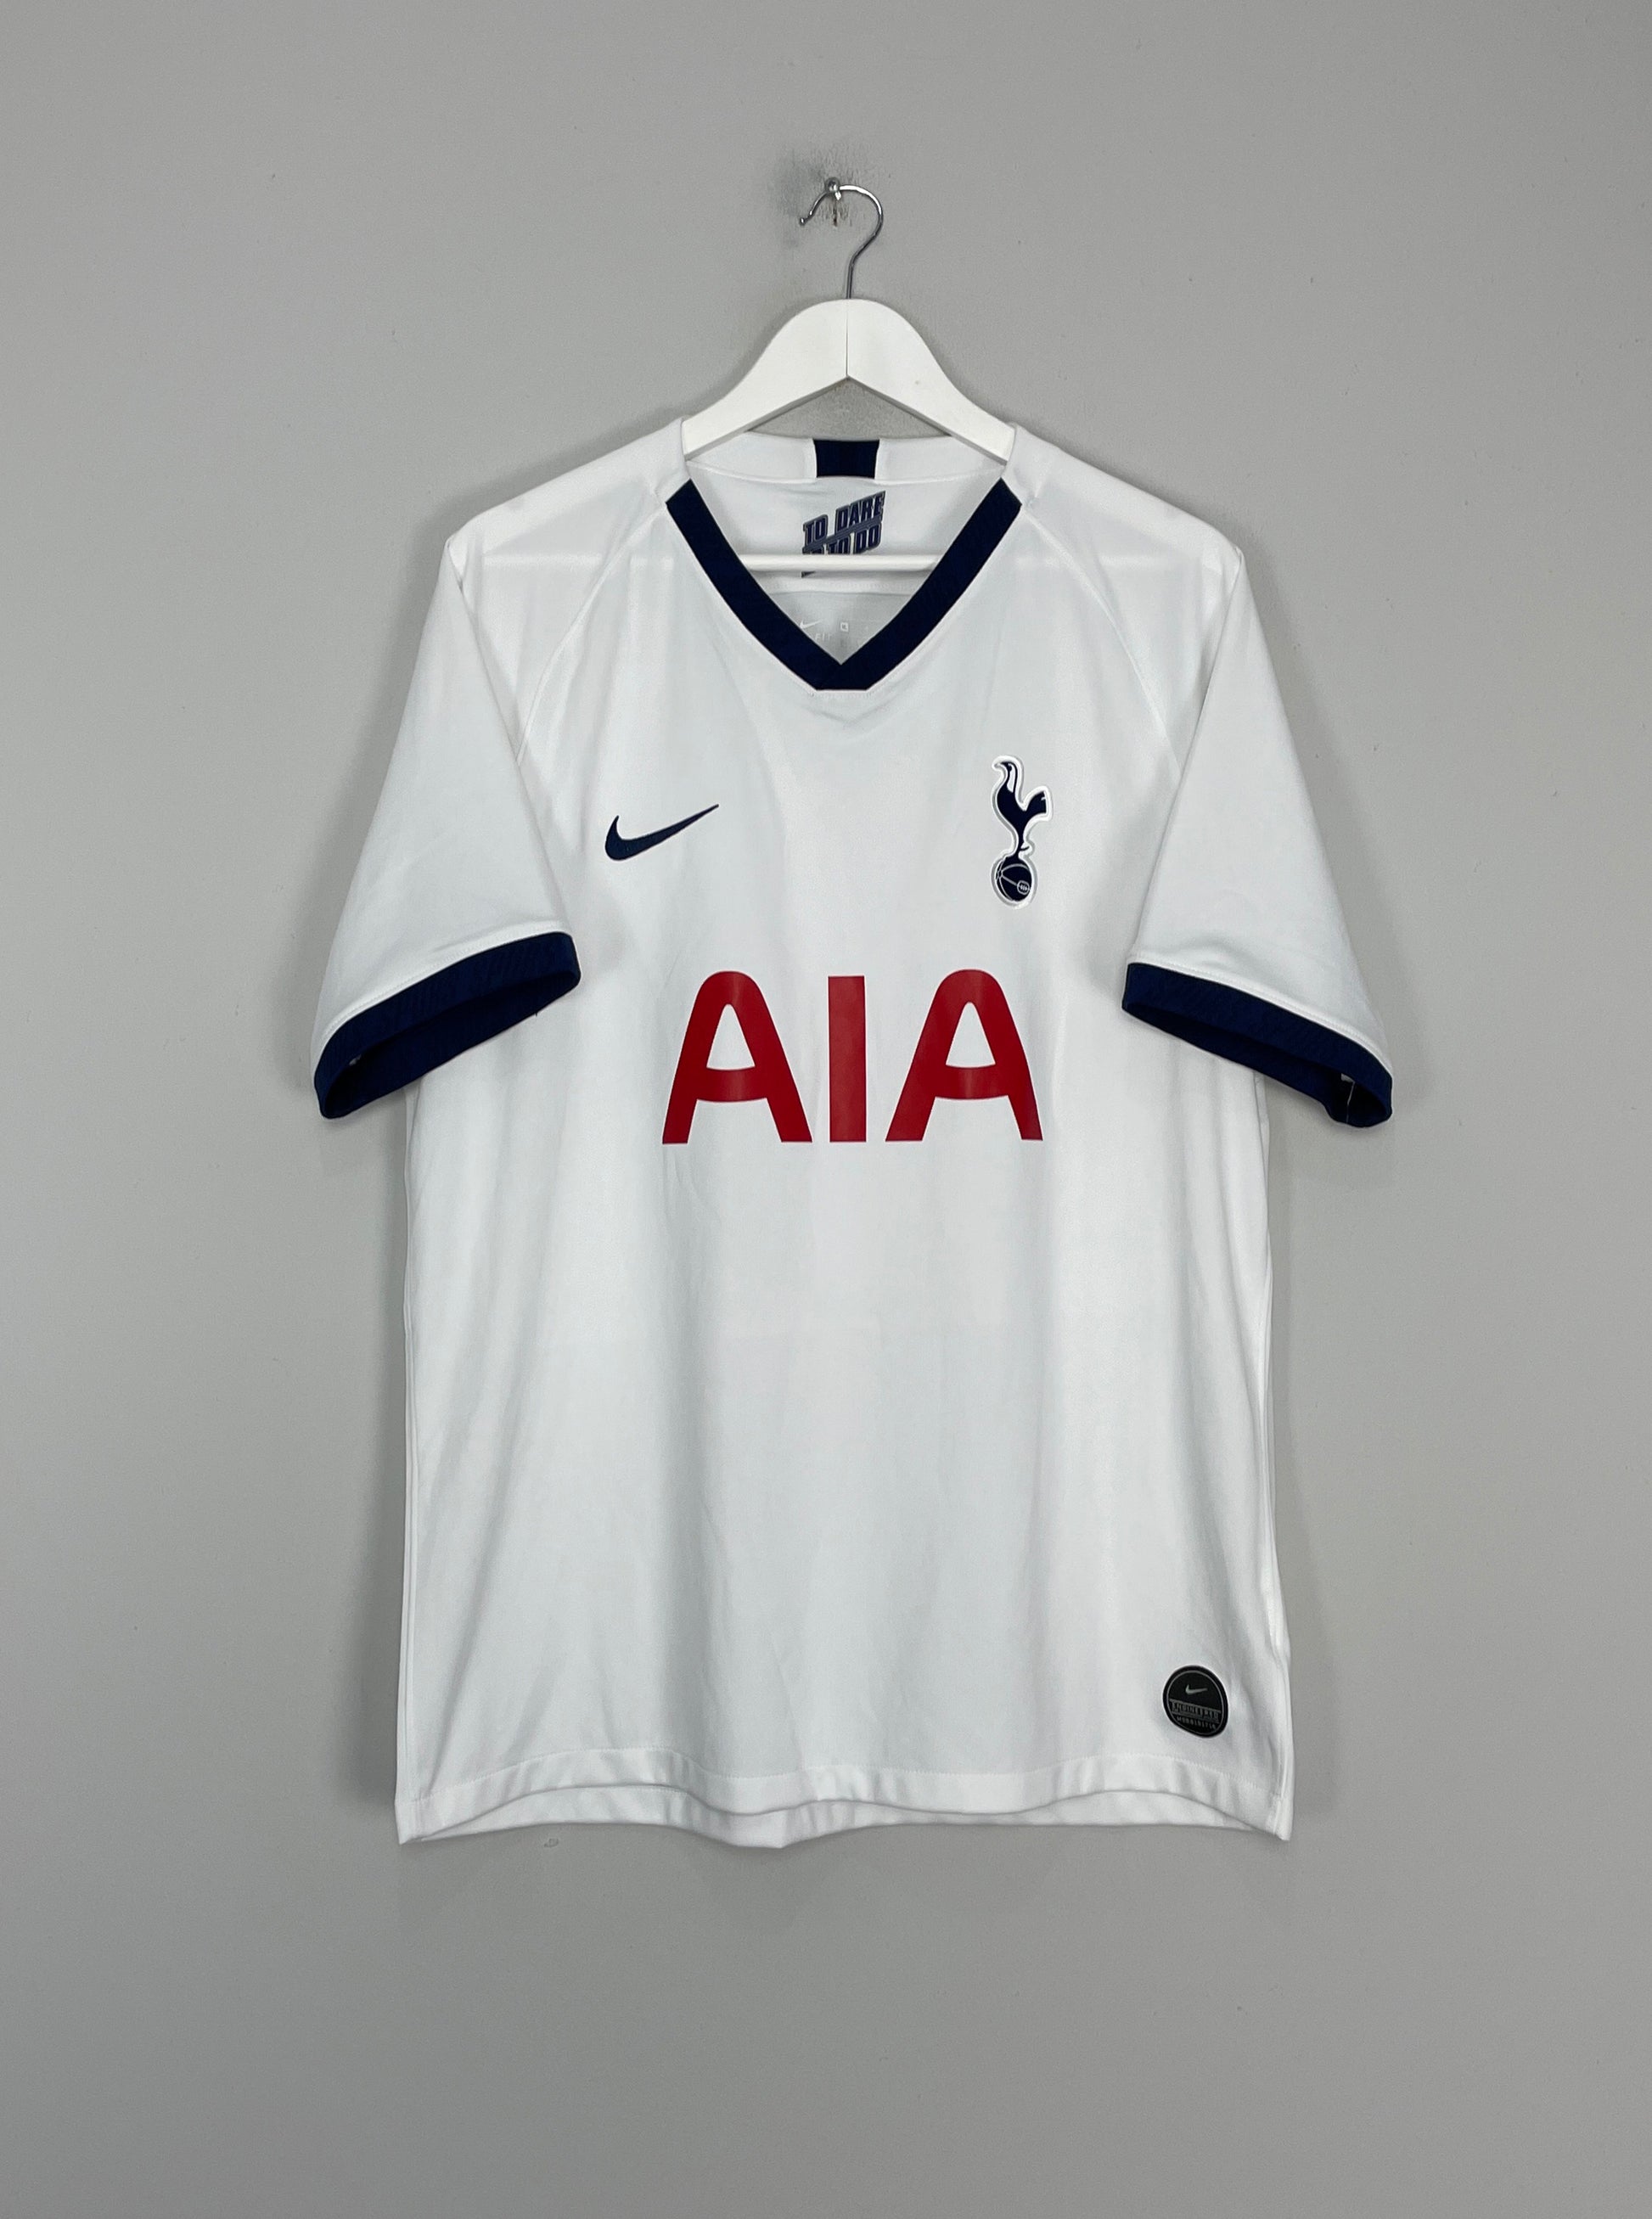 Nike Original Nike football shirt Tottenham Hotspur 2018/19